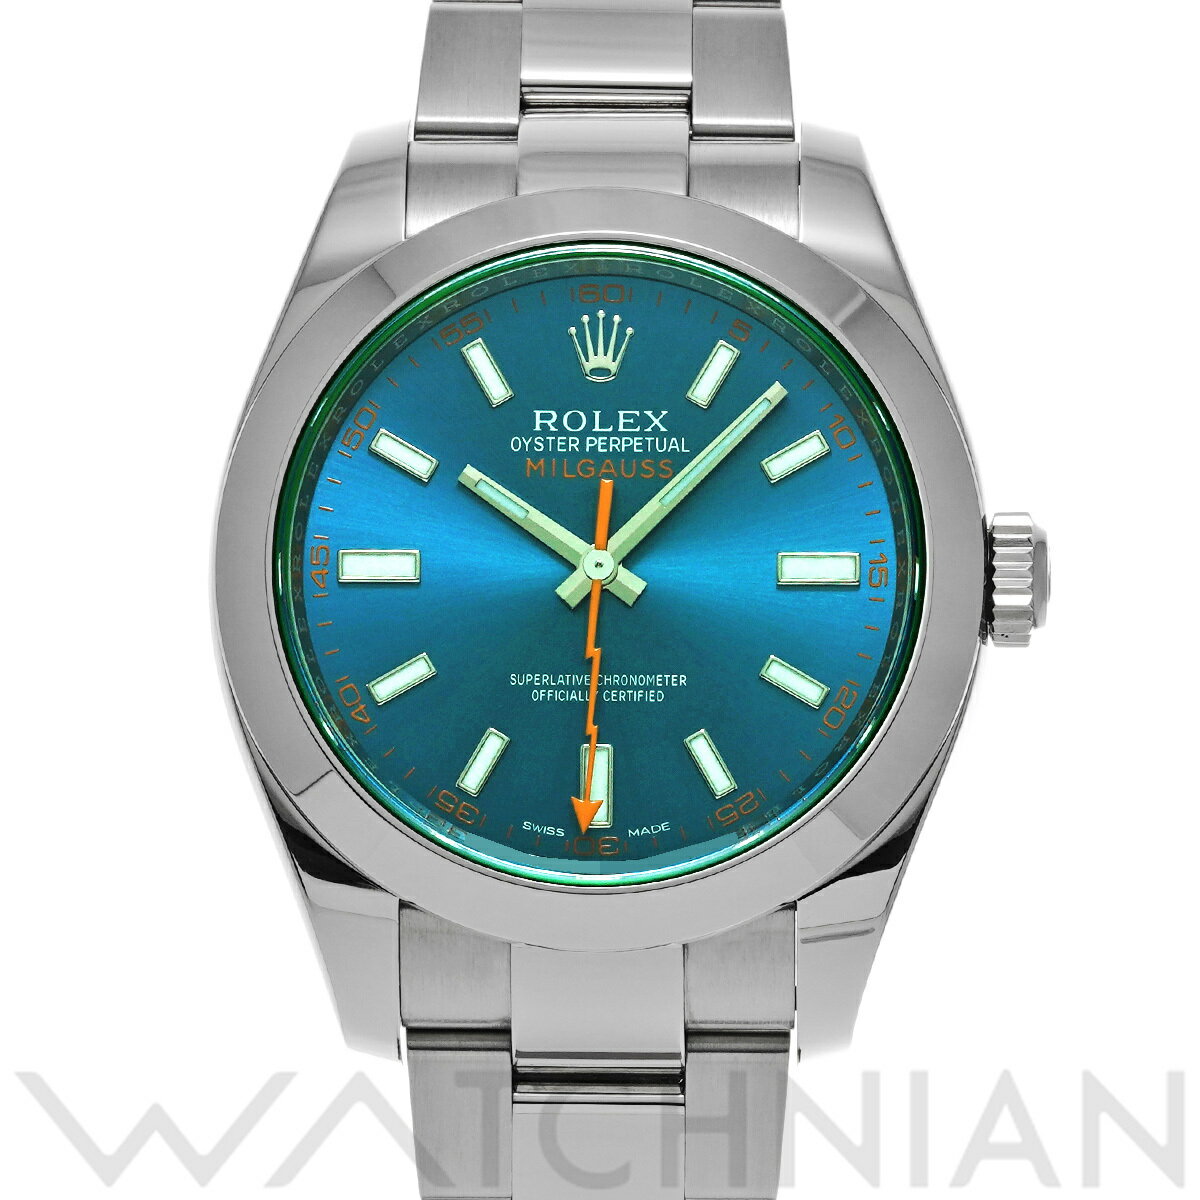 【4種選べるクーポン】【ローン60回払い無金利】【中古】 ロレックス ROLEX ミルガウス 116400GV ランダムシリアル Zブルー メンズ 腕時計 ロレックス 時計 高級腕時計 ブランド